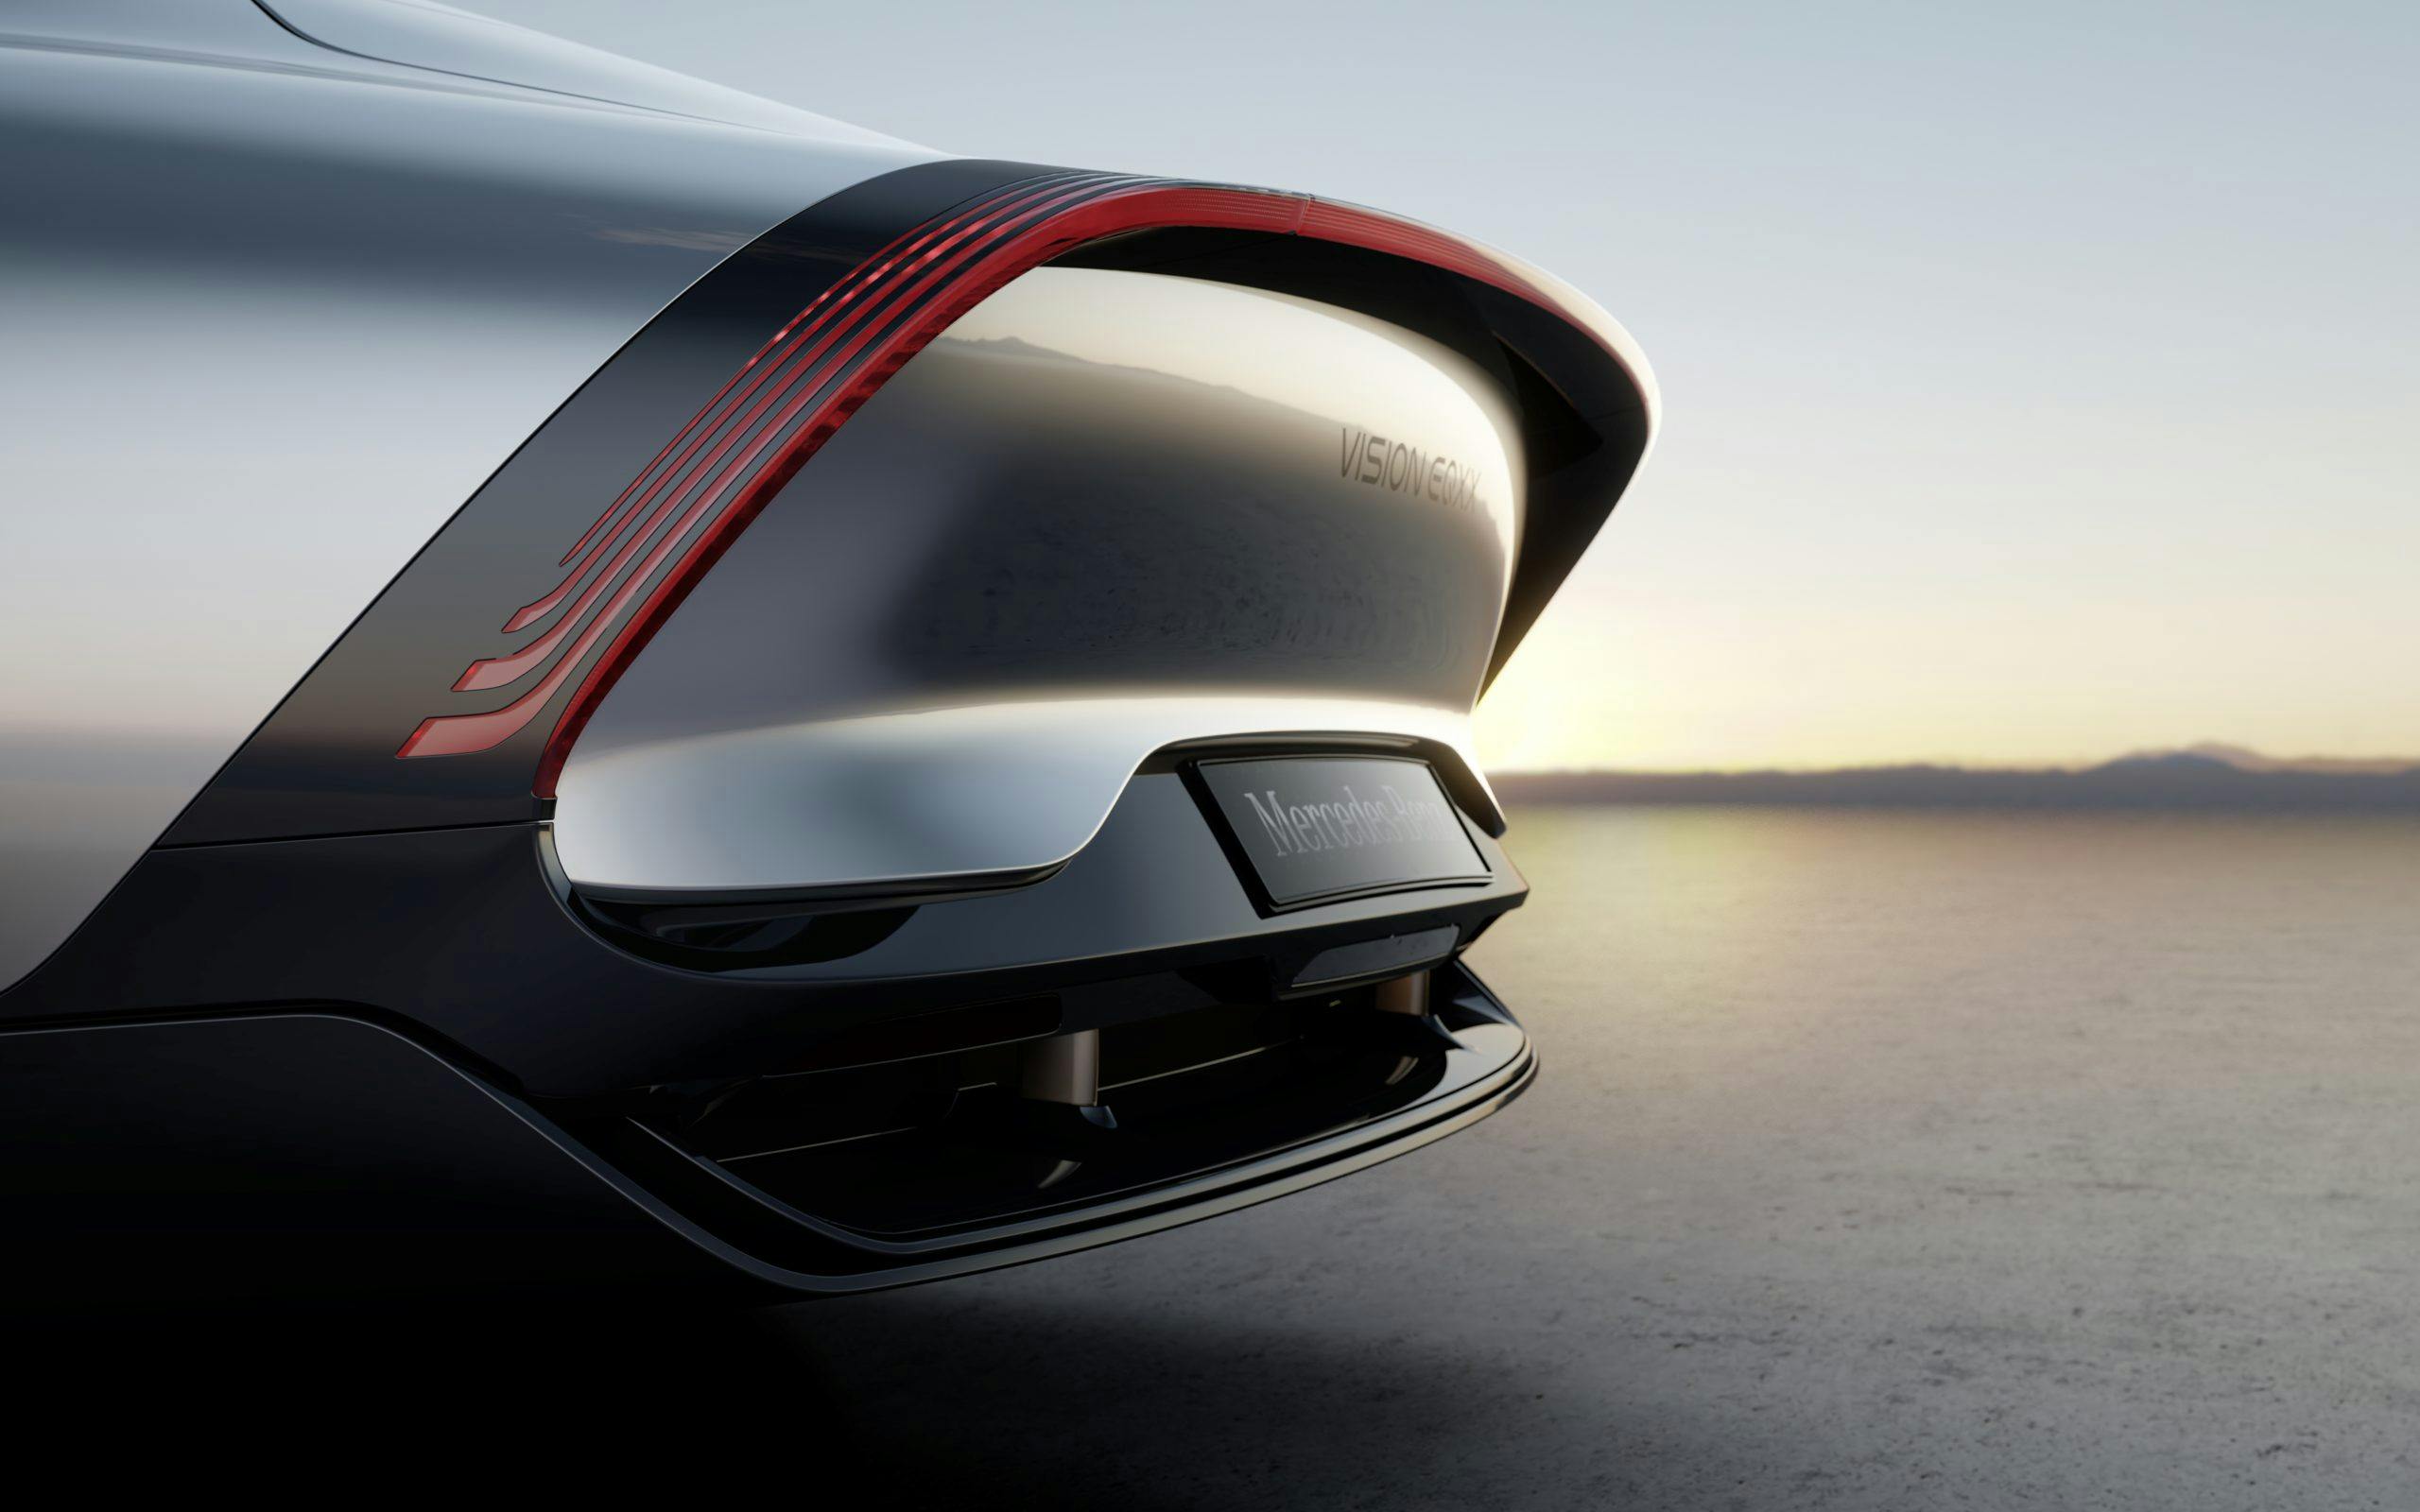 Mercedes-Benz VISION EQXX concept aero rear tail